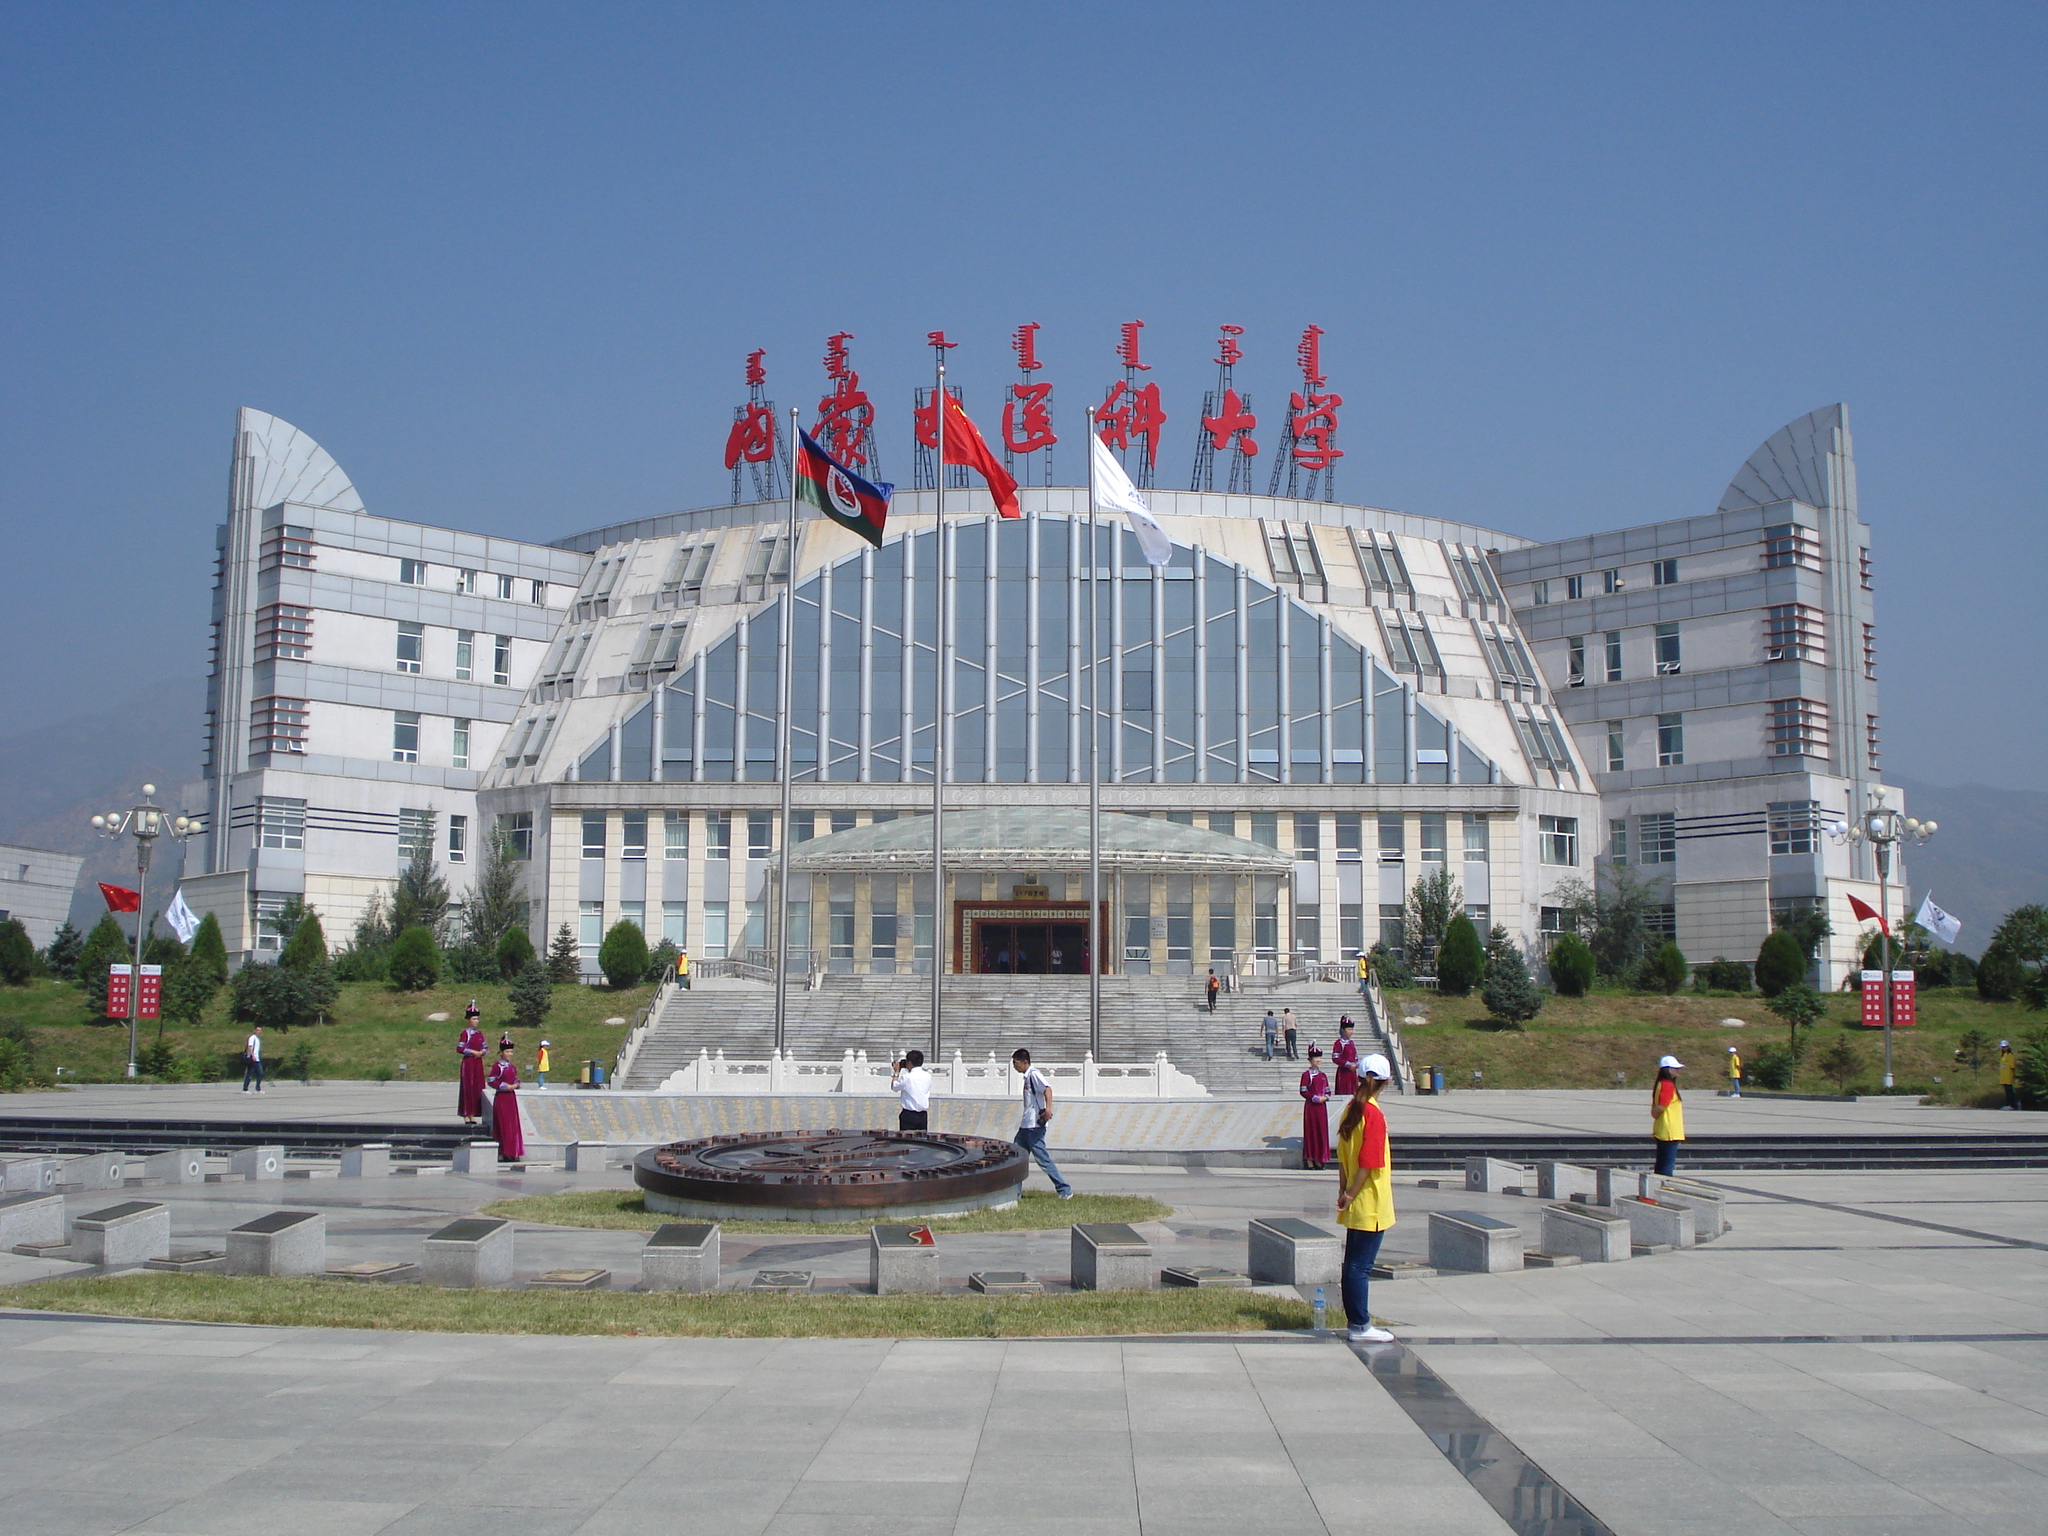 內蒙古醫科大學